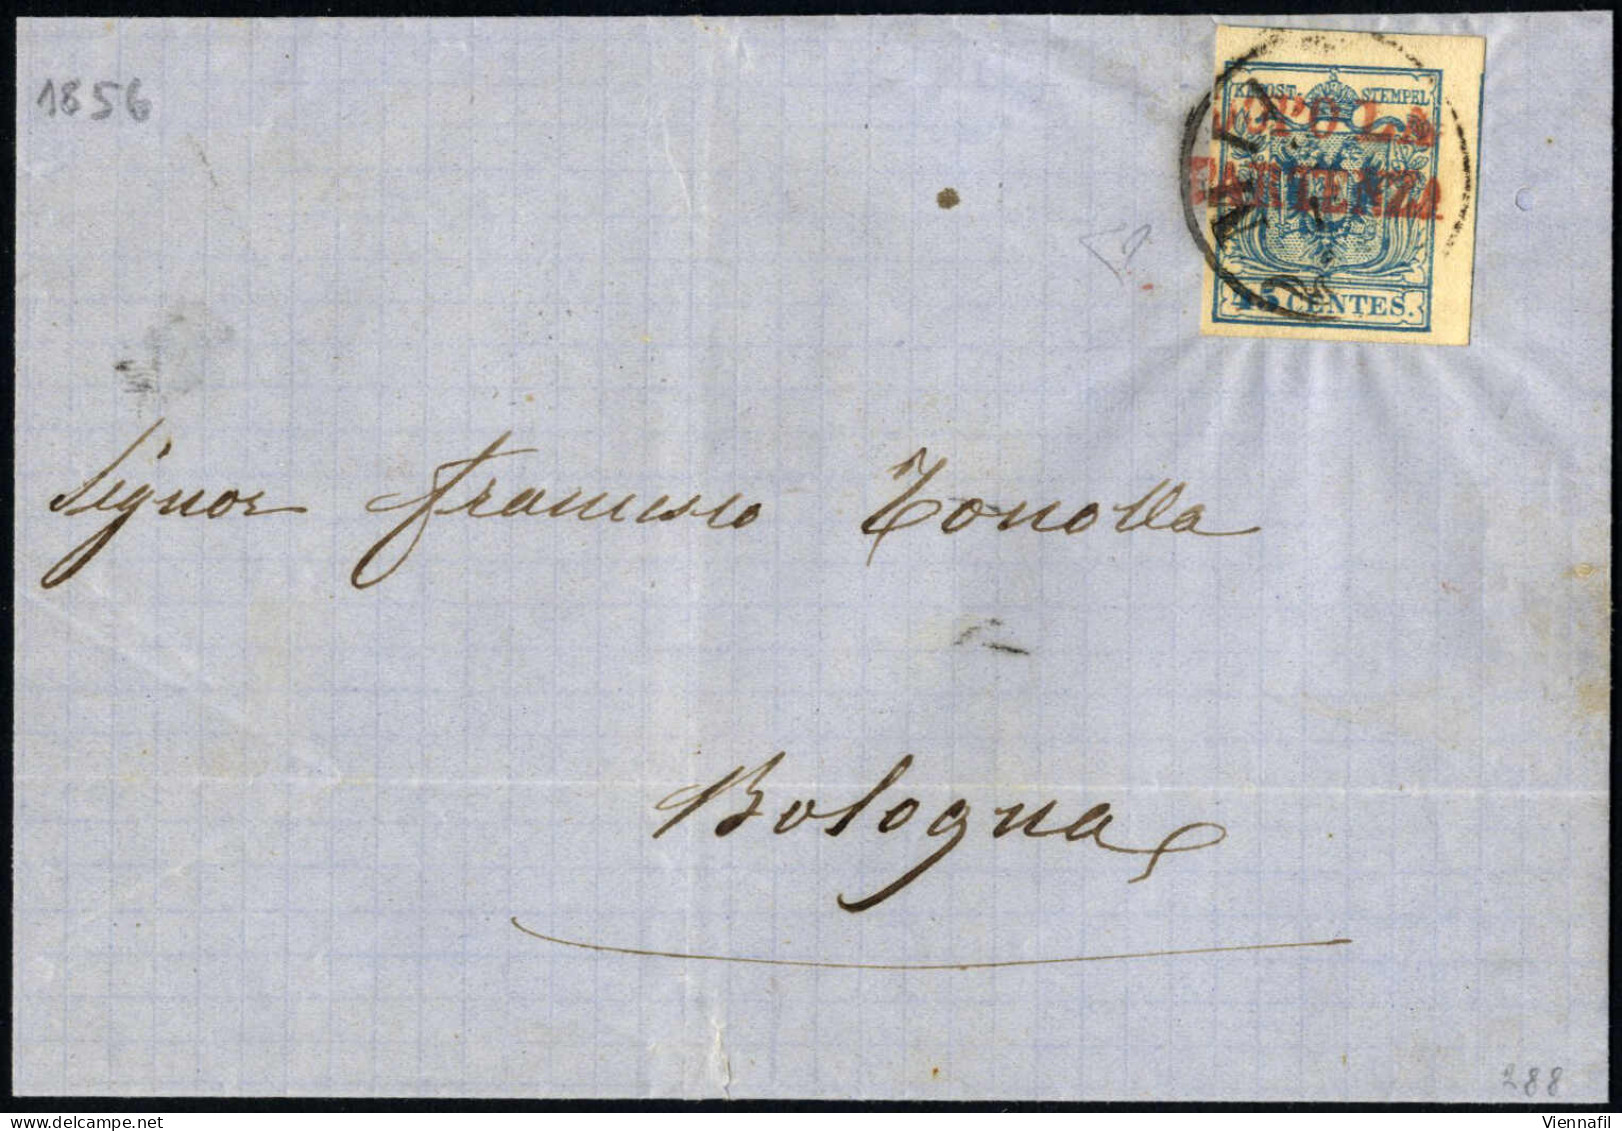 Cover 1856, 45 Cent, Carta A Macchina, Su Lettera Annullato Con "MILANO 24/12" E Bollo Accessorio In Rosso "DOPO LA PART - Lombardo-Venetien